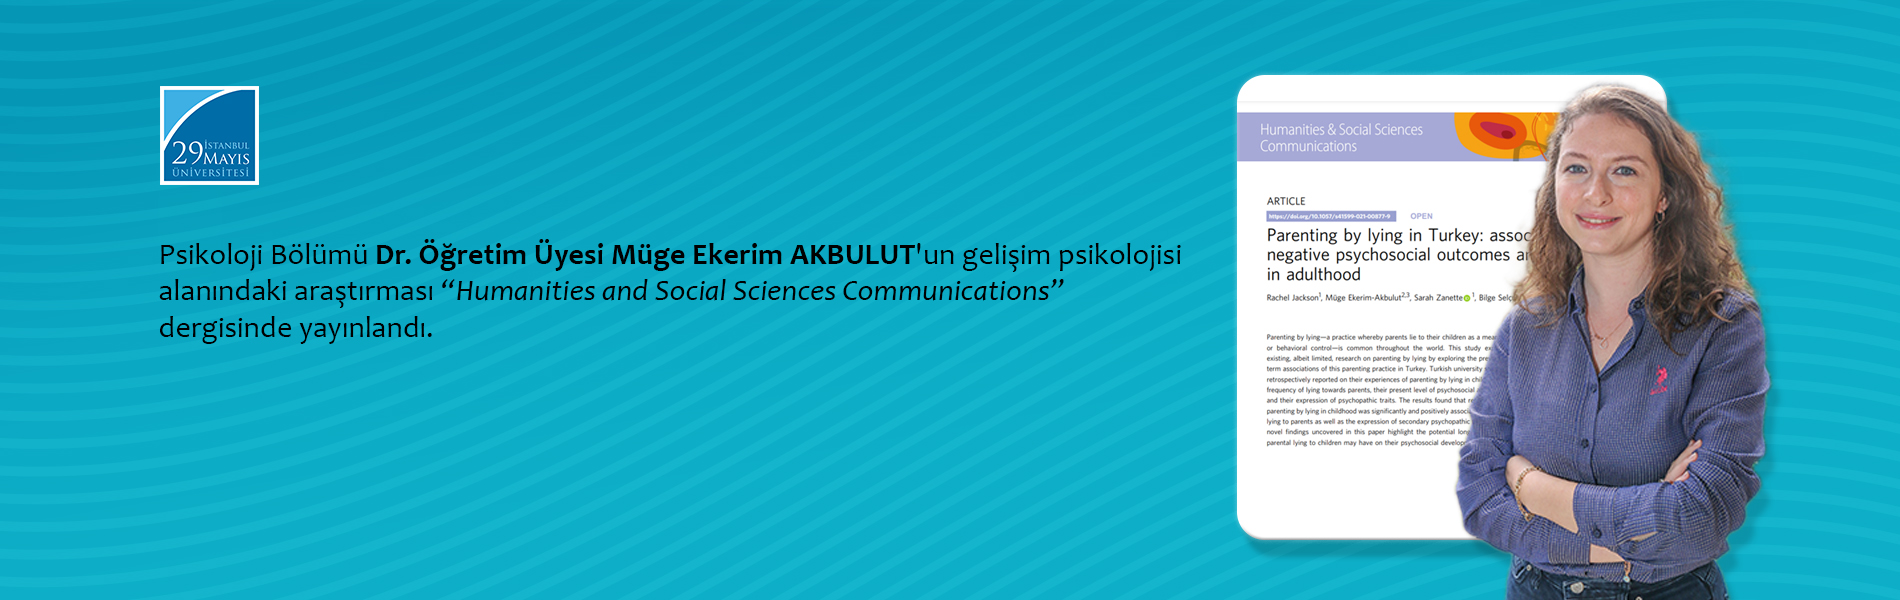 Psikoloji Bölümü Dr. Öğretim Üyesi Müge Ekerim Akbulut'un Gelişim Psikolojisi Alanındaki Araştırması Humanities and Social Sciences Communications Dergisinde Yayınlandı